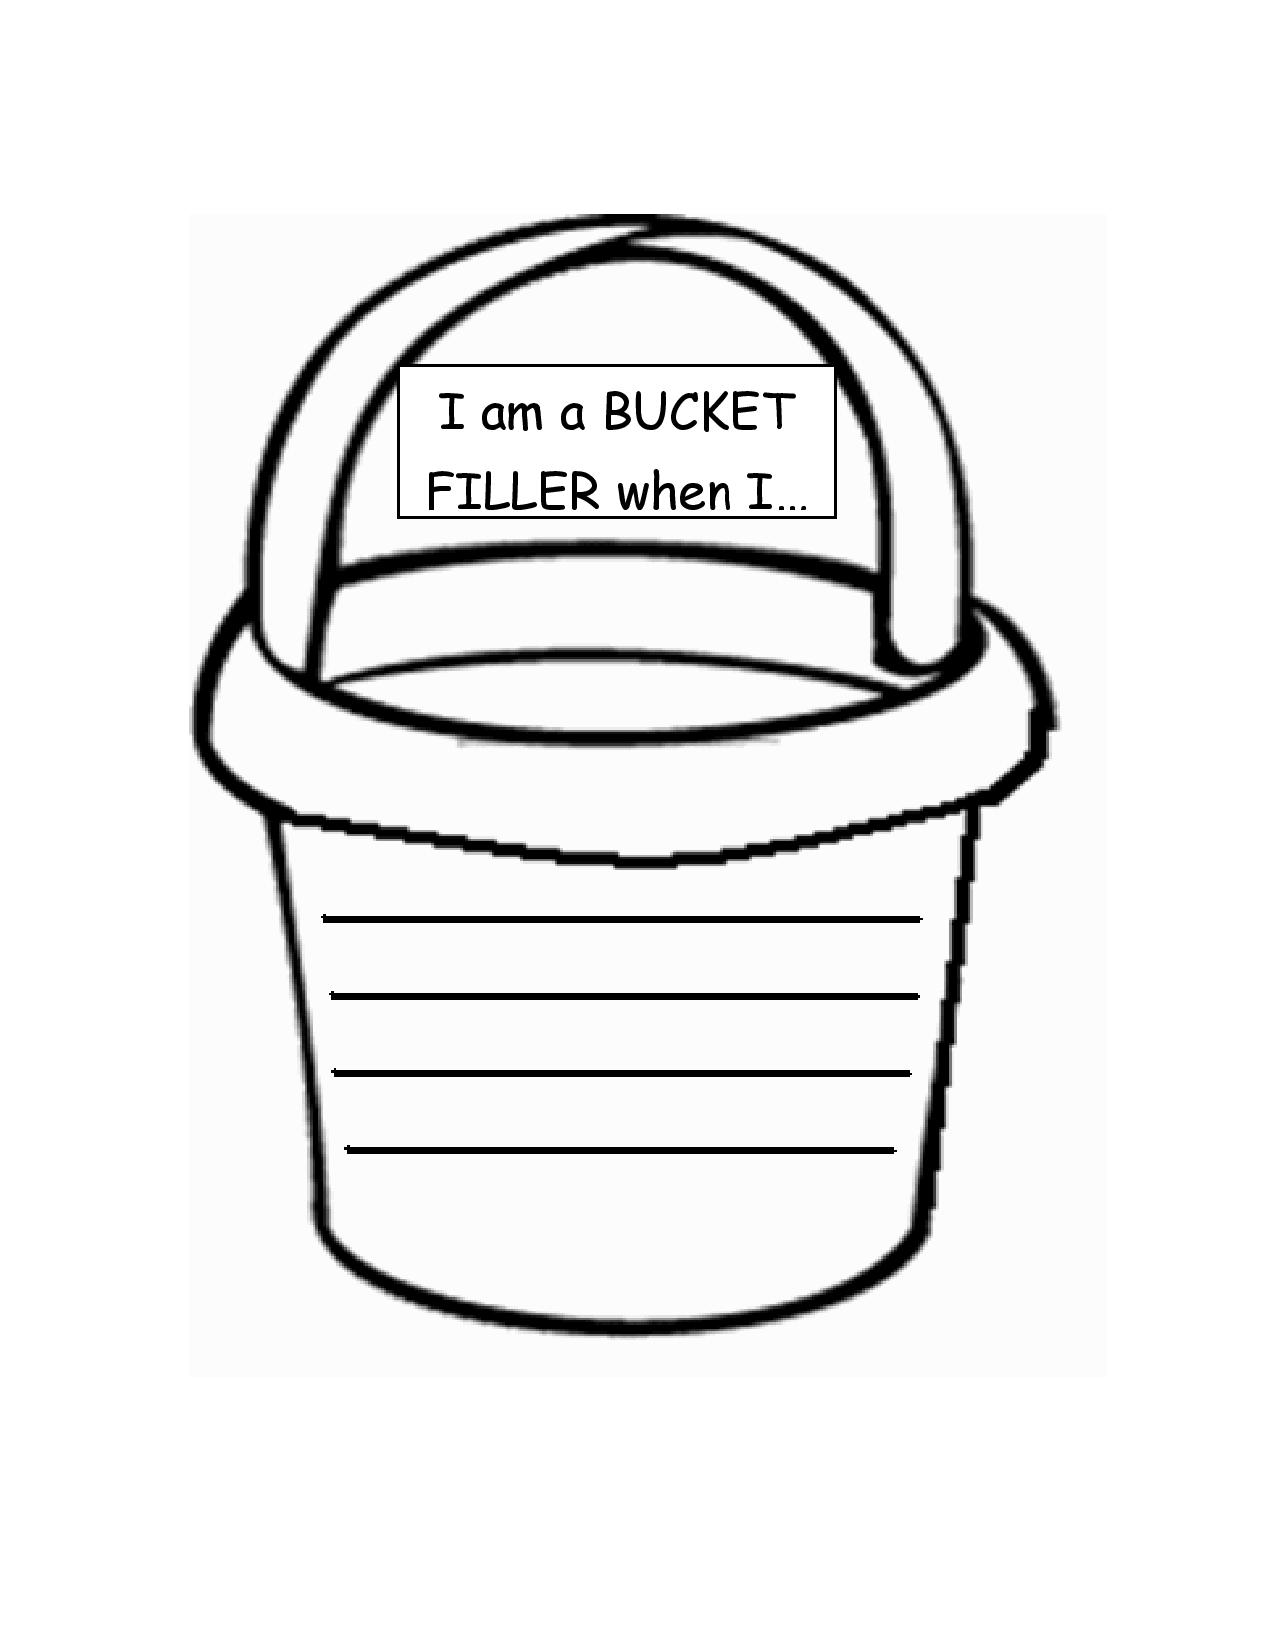 Free Printable Bucket Filler Slips